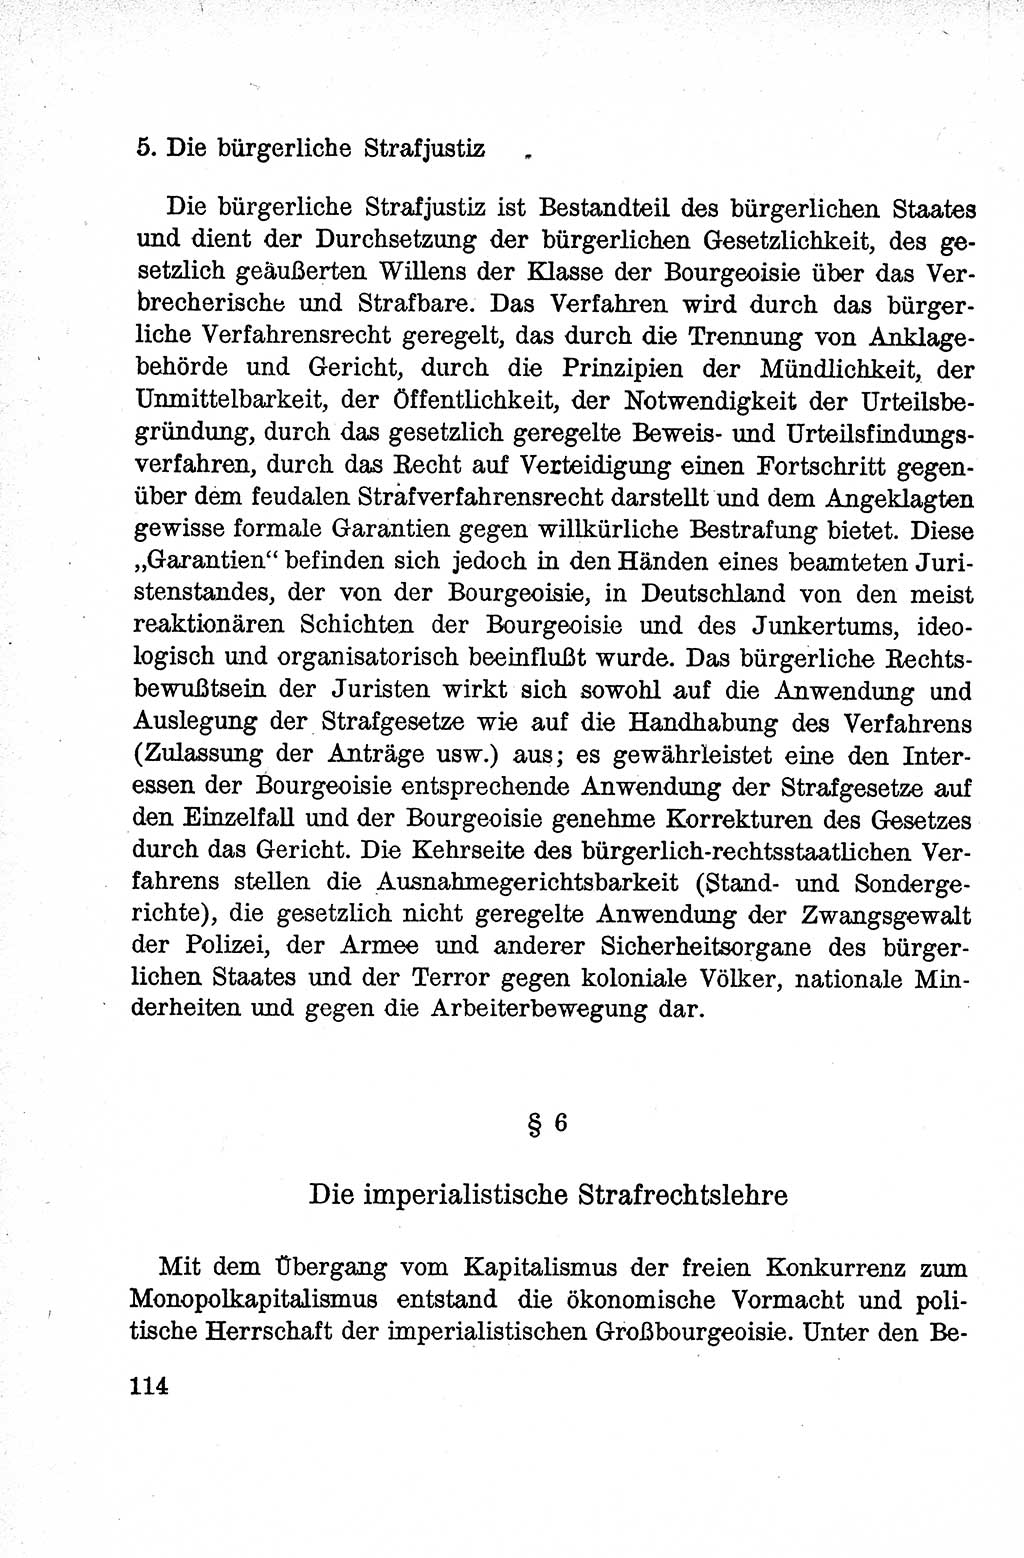 Lehrbuch des Strafrechts der Deutschen Demokratischen Republik (DDR), Allgemeiner Teil 1959, Seite 114 (Lb. Strafr. DDR AT 1959, S. 114)